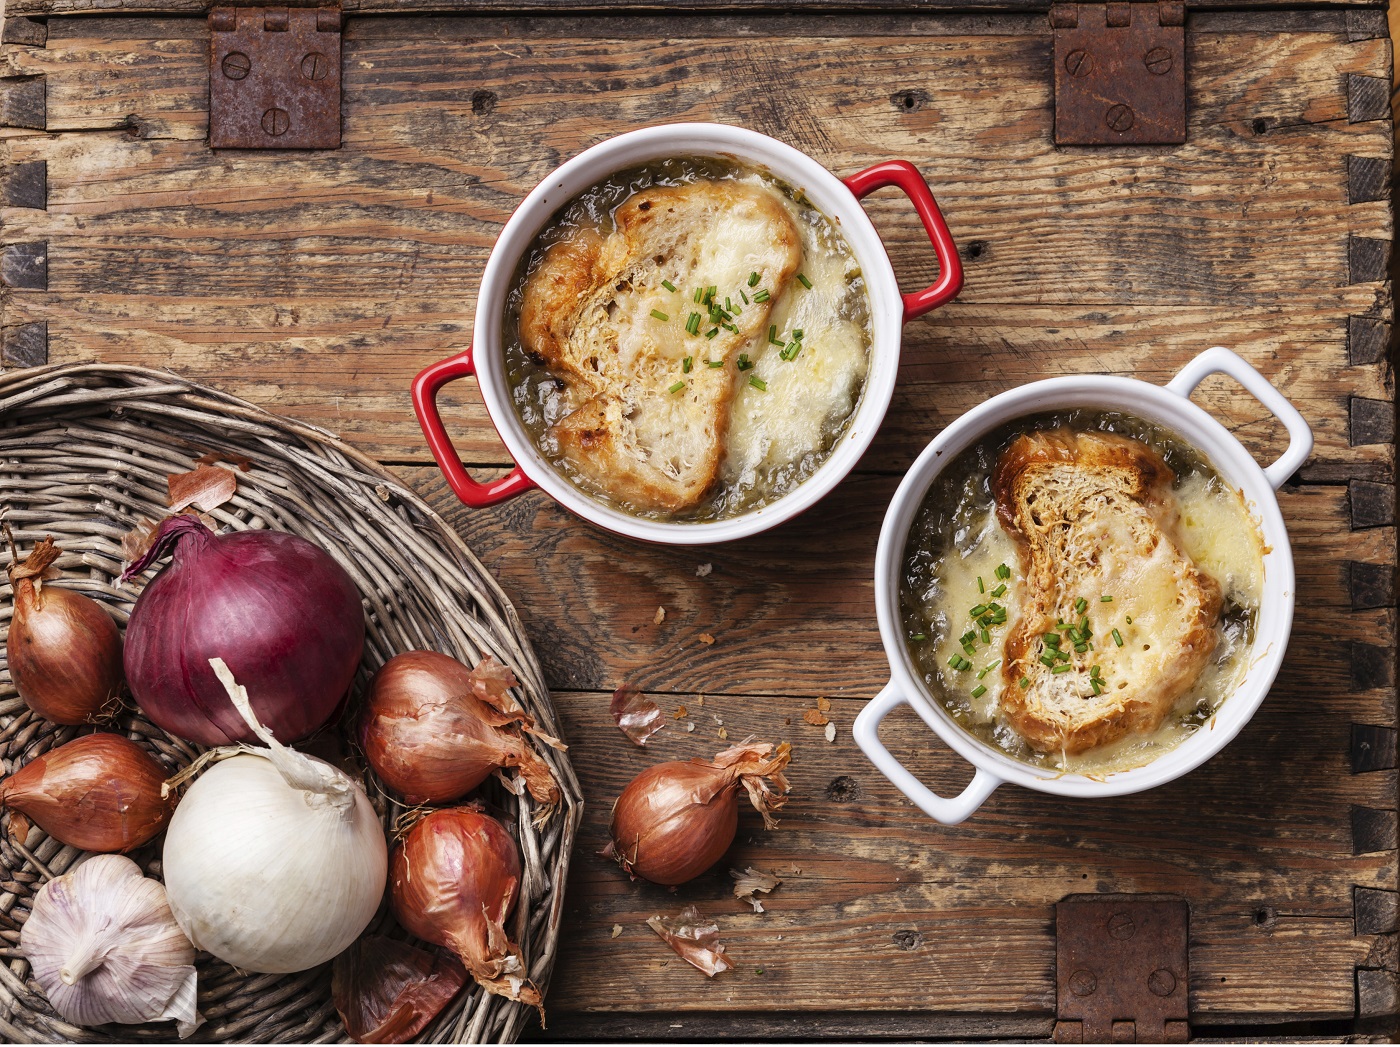 La zuppa di cipolle secondo la ricetta tradizionale francese